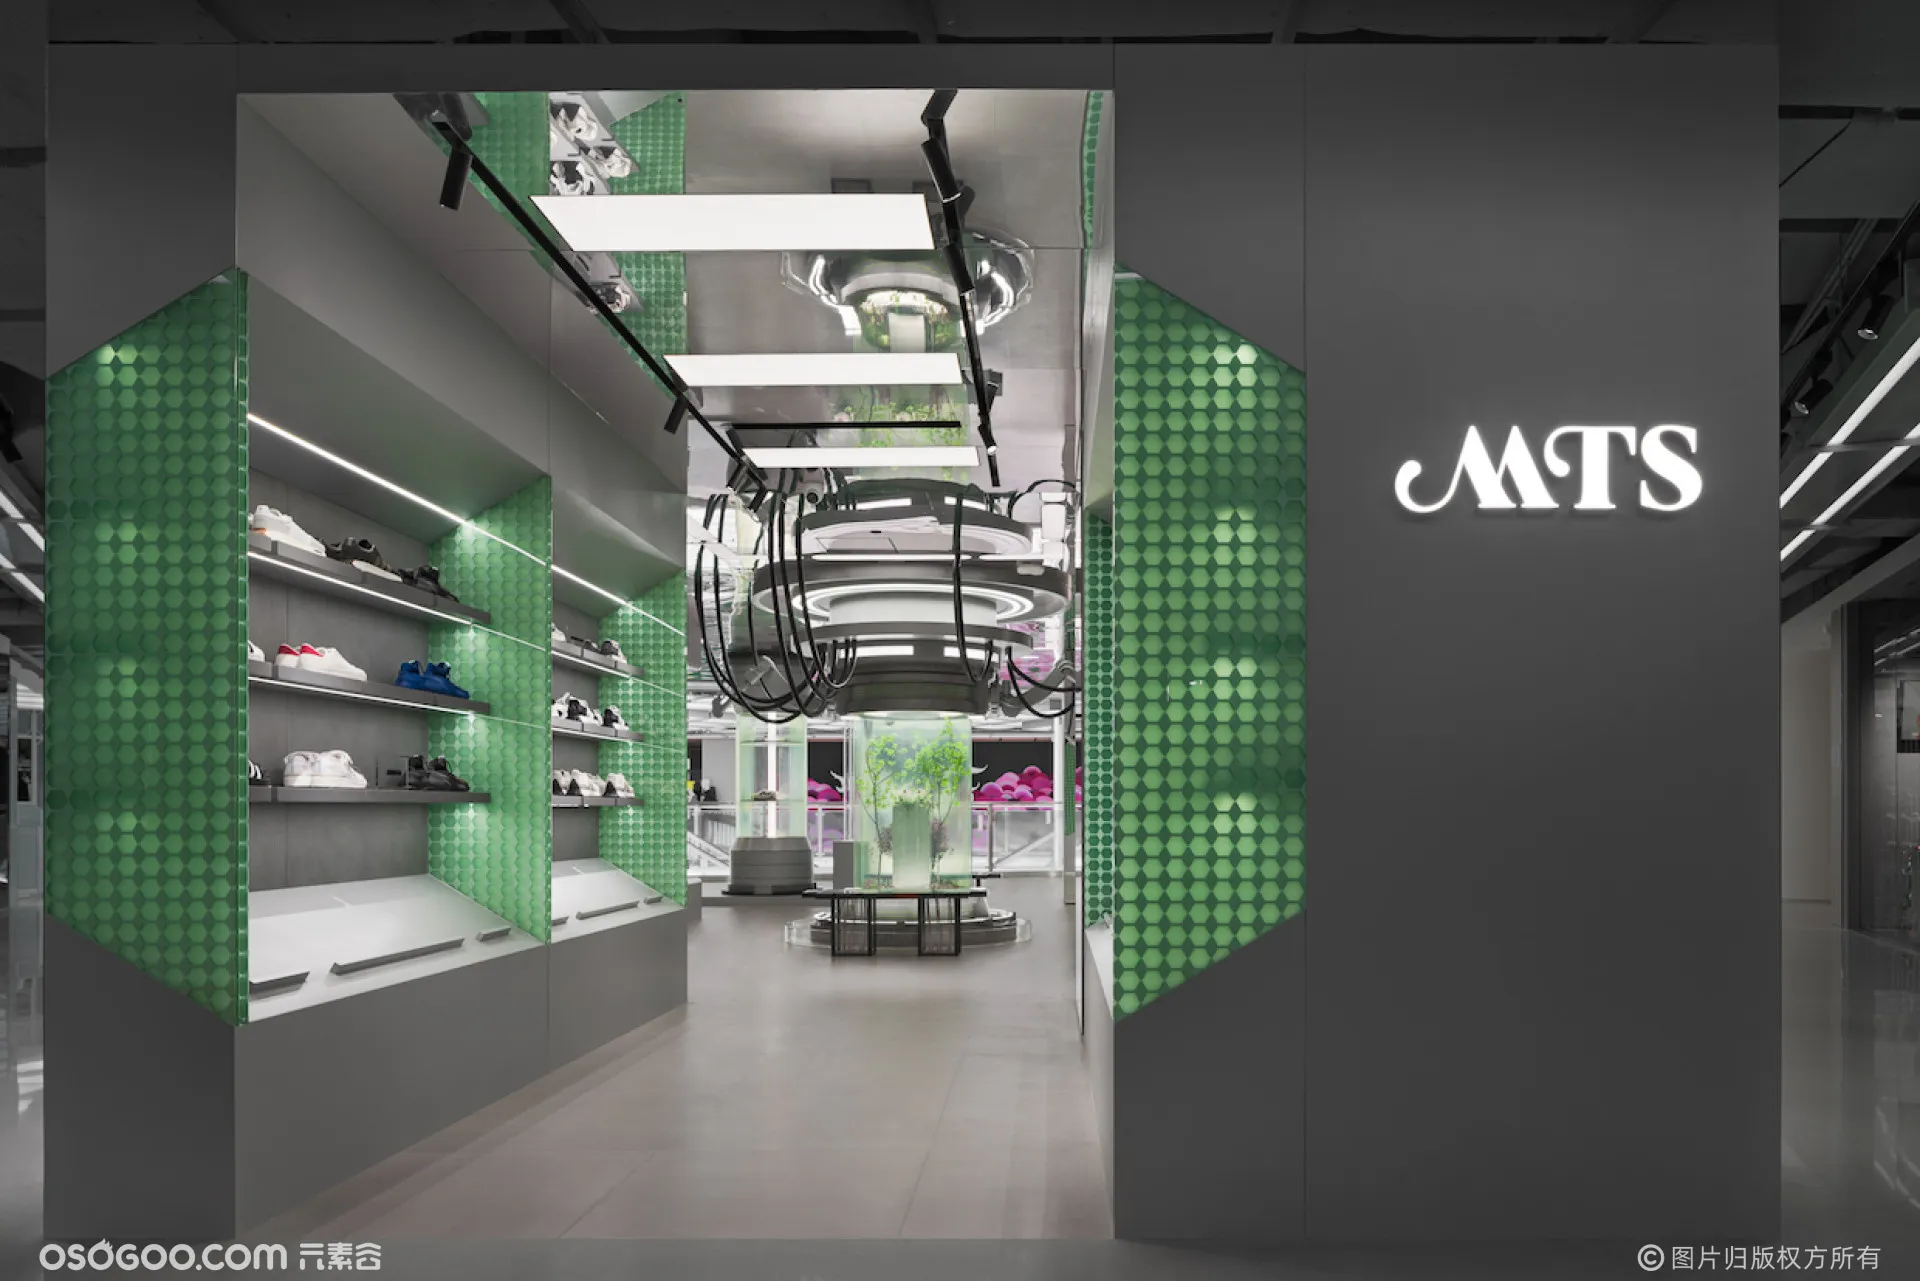 北京一家运动鞋零售商用科幻风格的空间超越了简单的商店